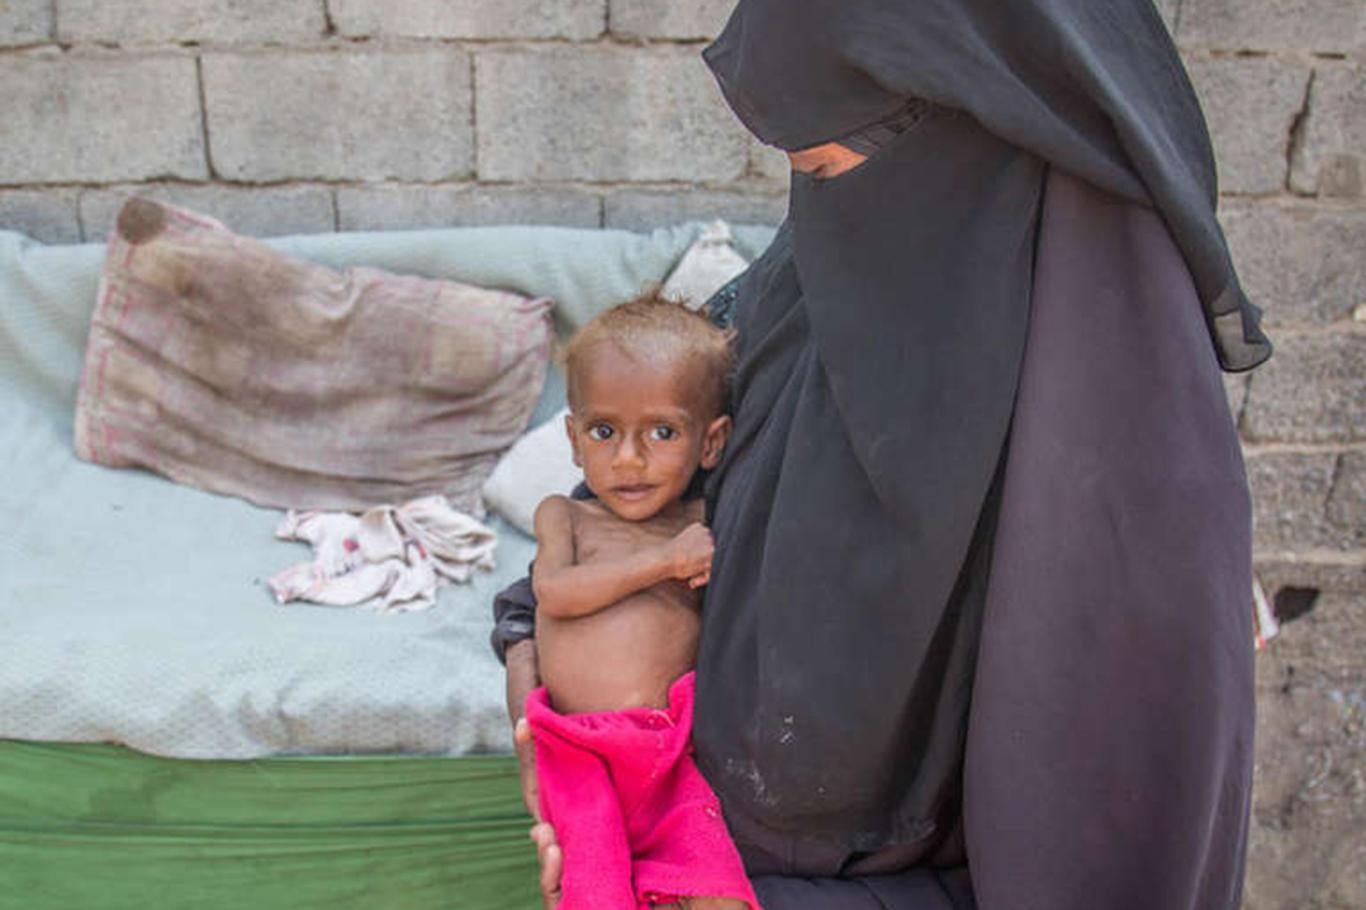 "Yemen'de 85 bin çocuk açlık ve hastalıktan ölmüş olabilir"